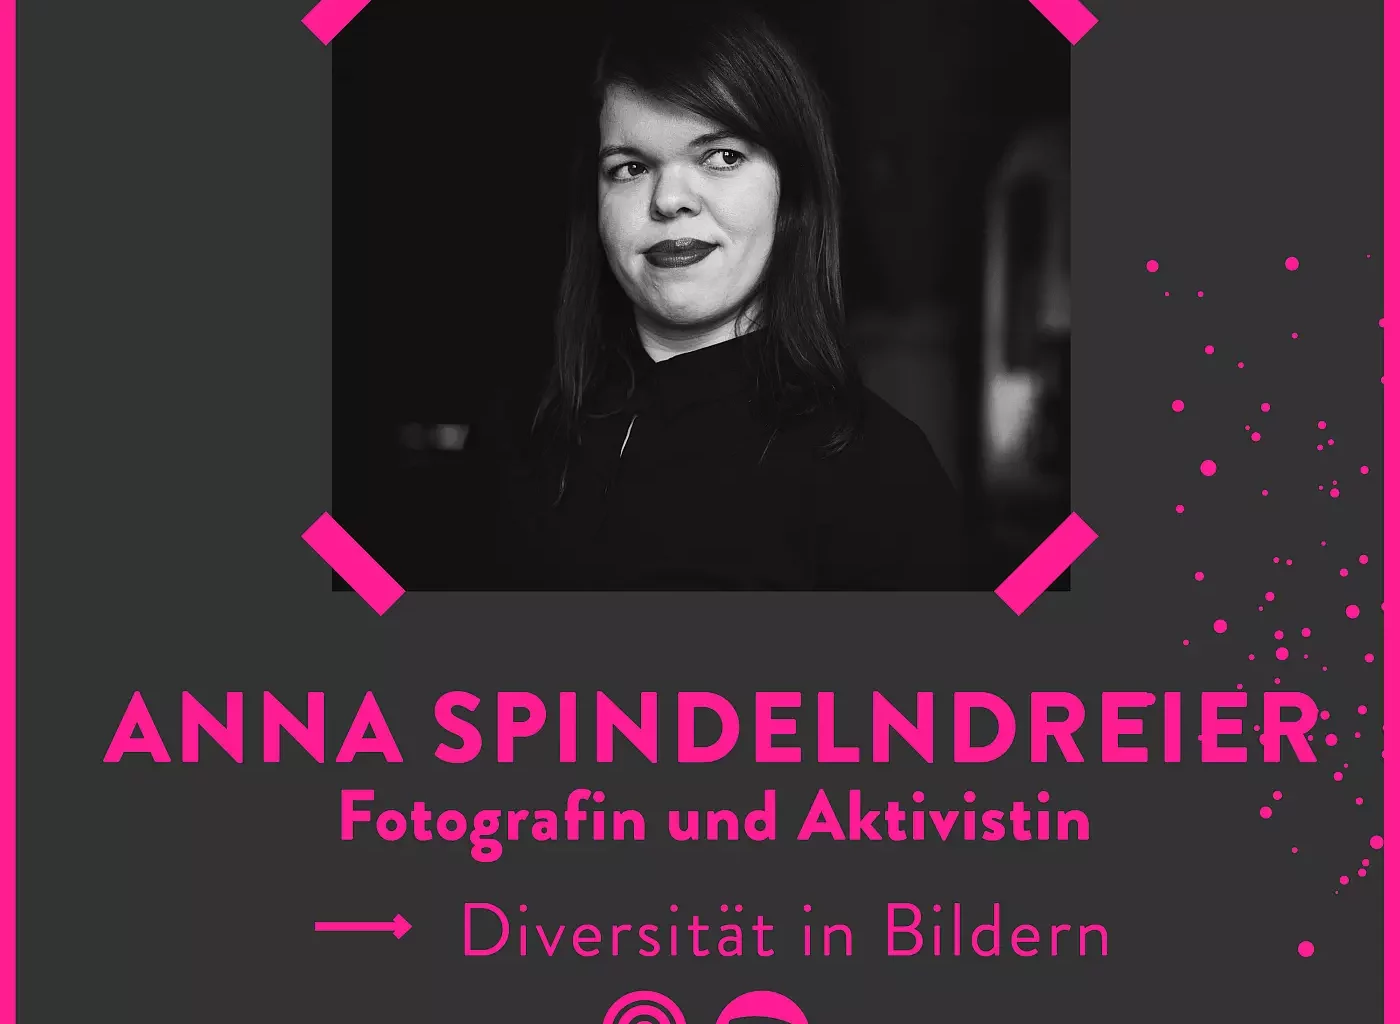 Anna Spindelndreier im Interview